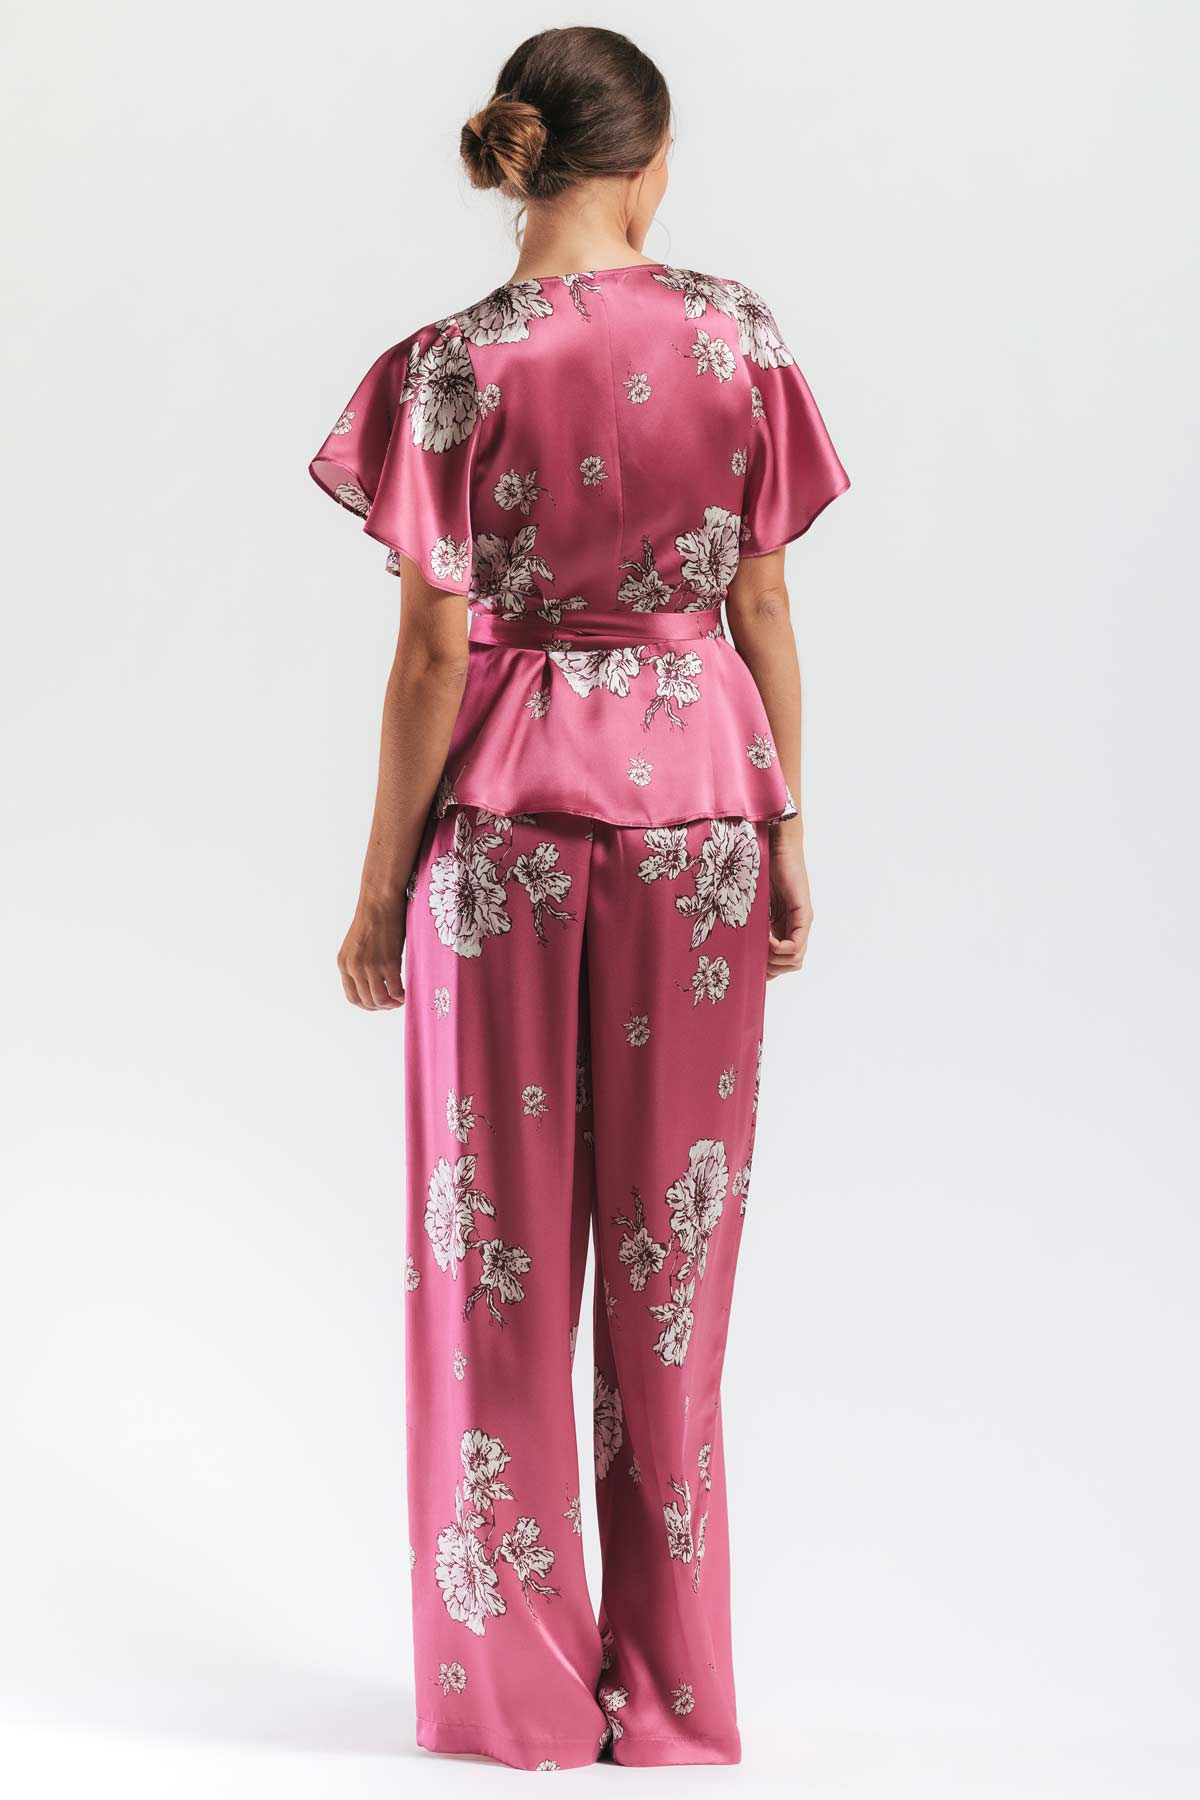 Peony Blooms Leisure PJ Silk Wrap Set Pajama NK iMODE 